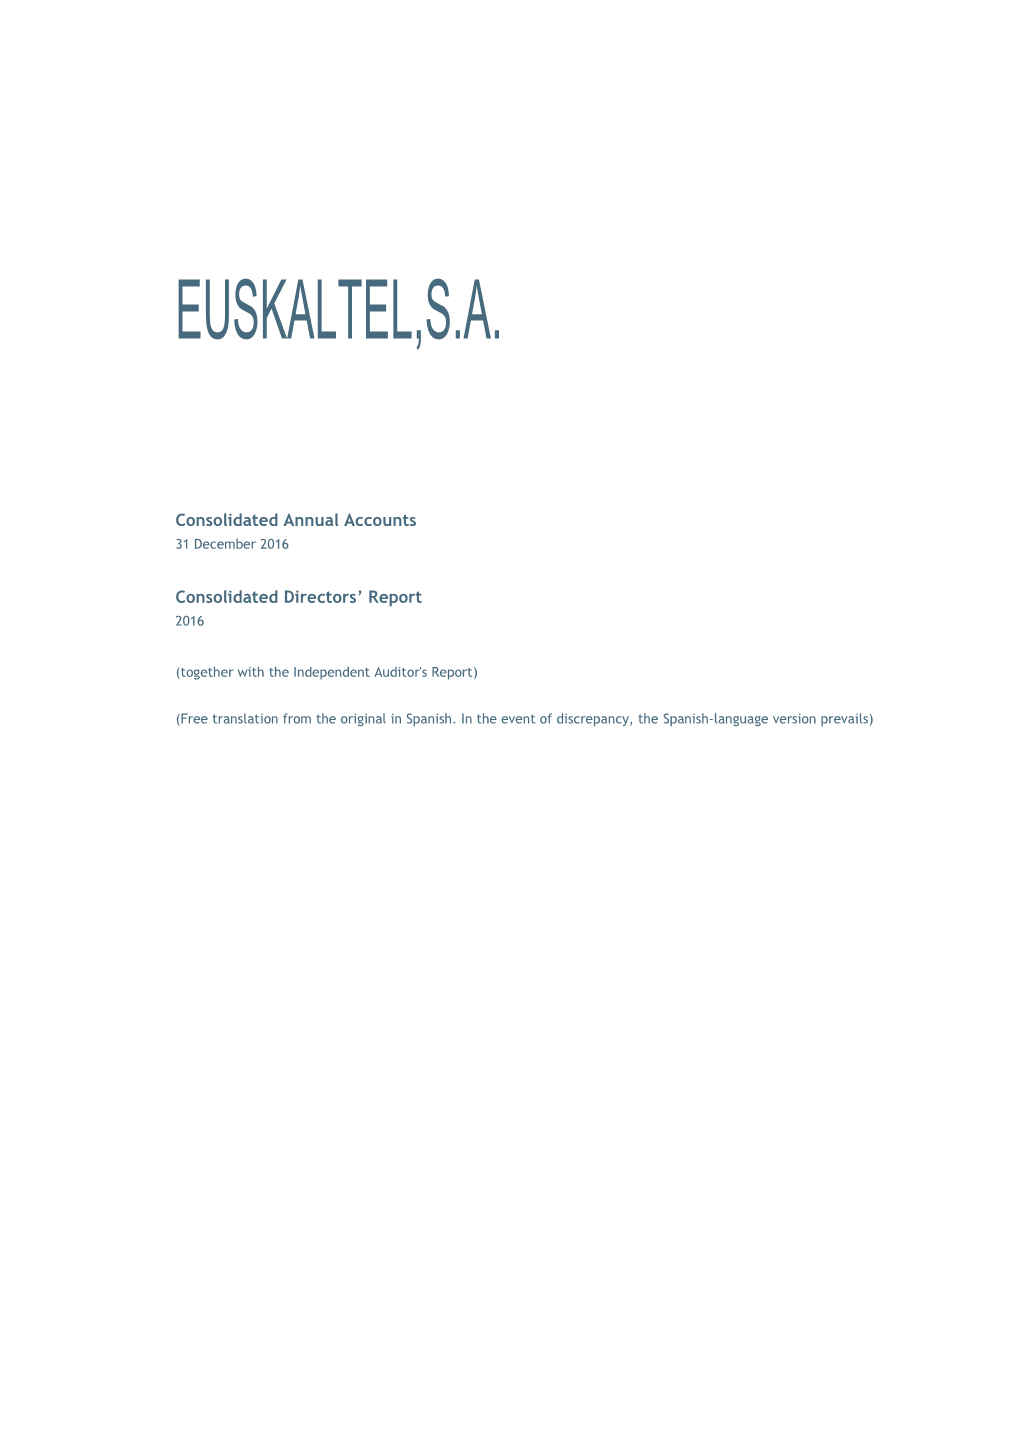 Euskaltel,S.A